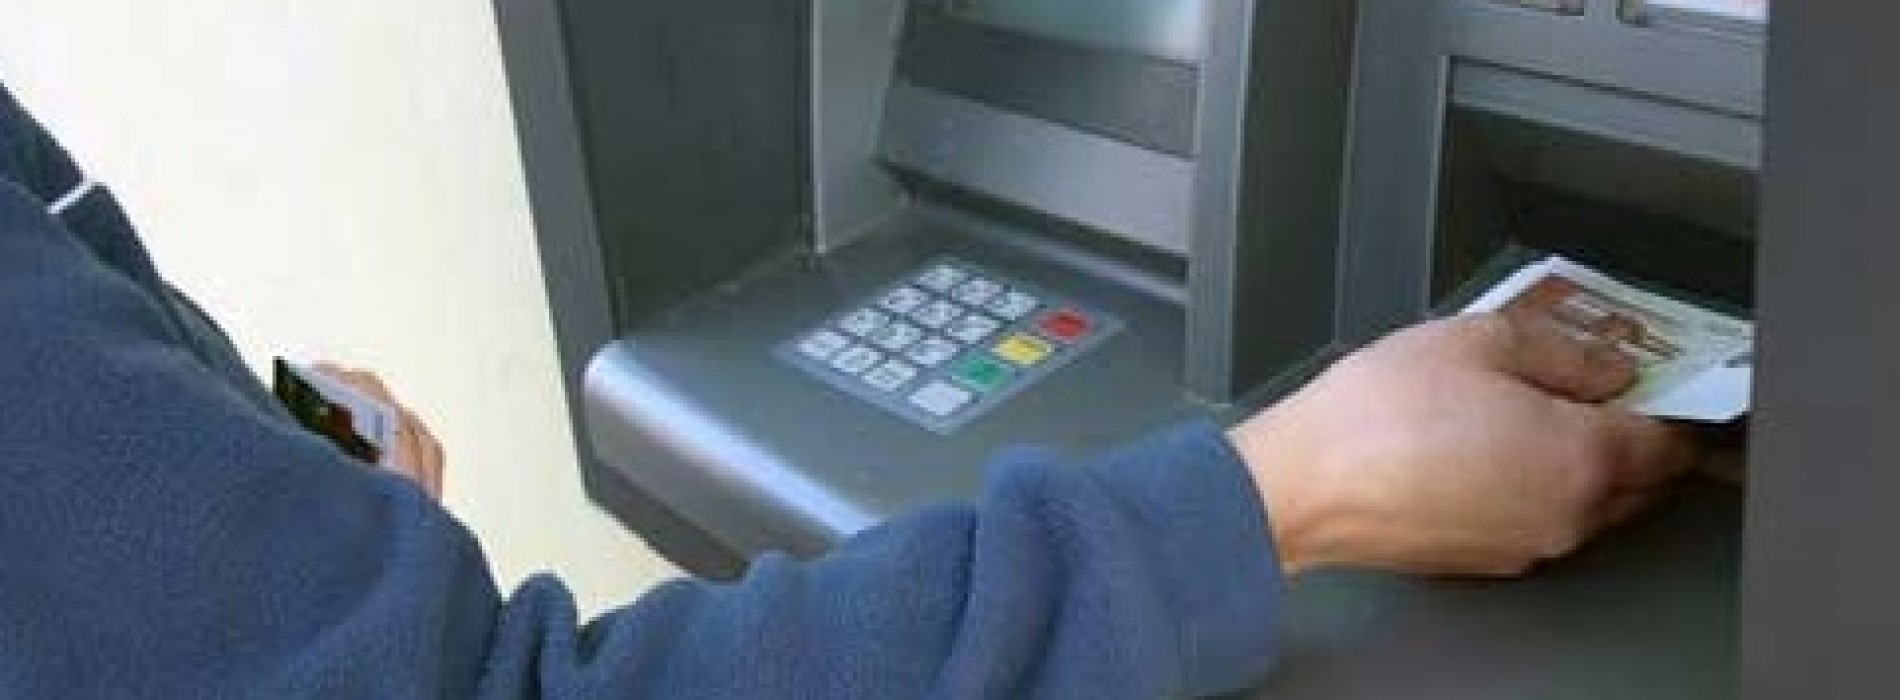 Blokada bankomatu – czy to koniec?